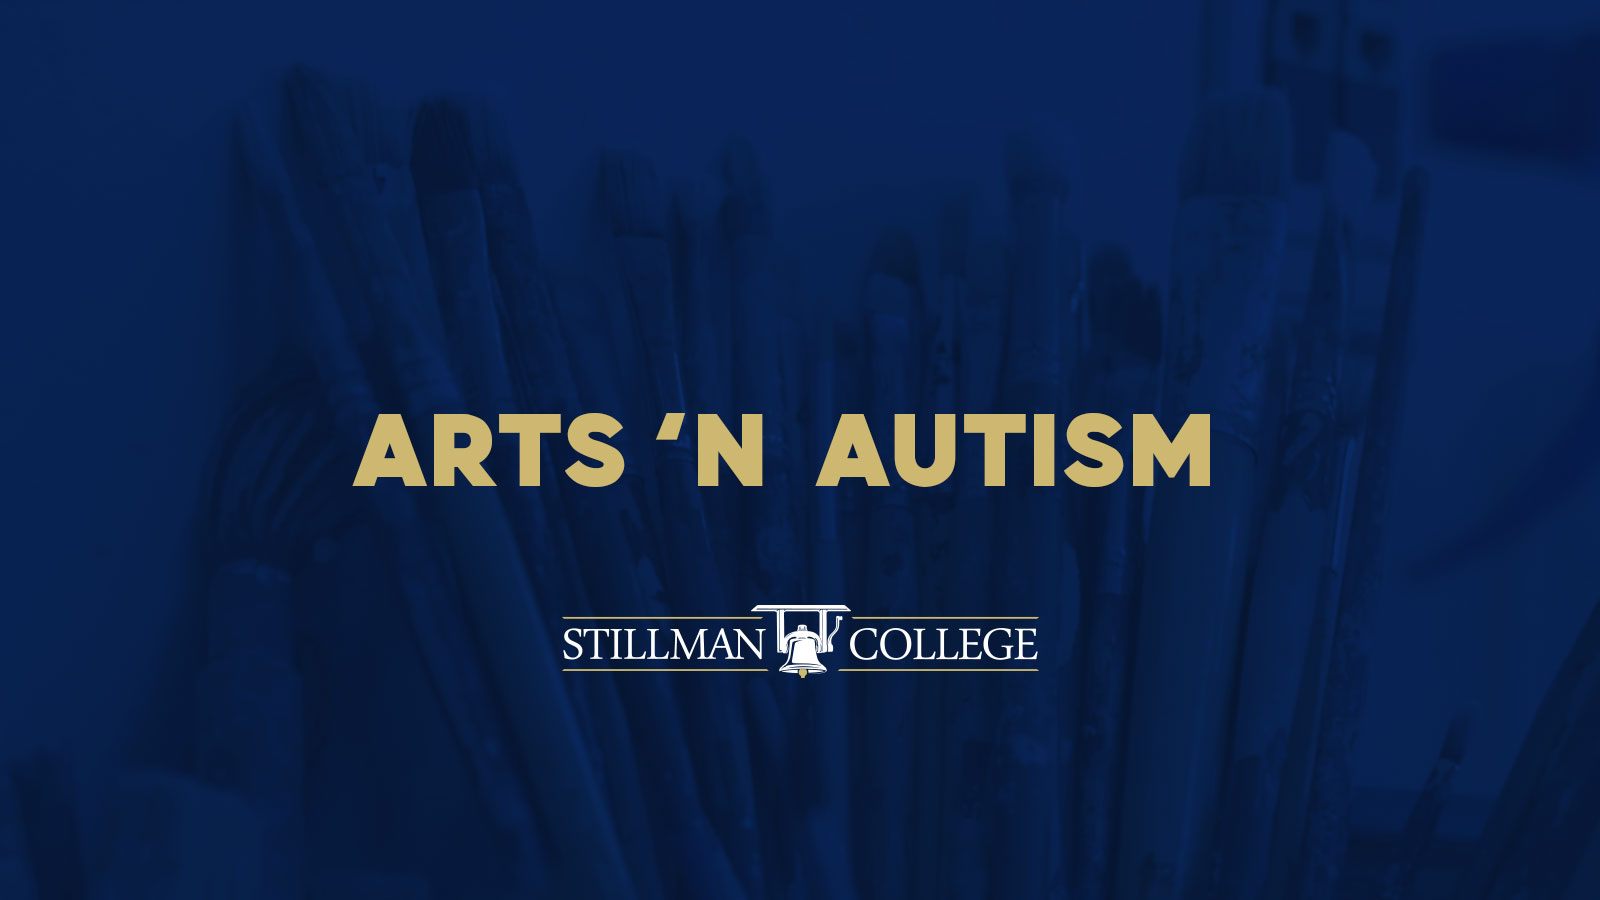 Arts n autism